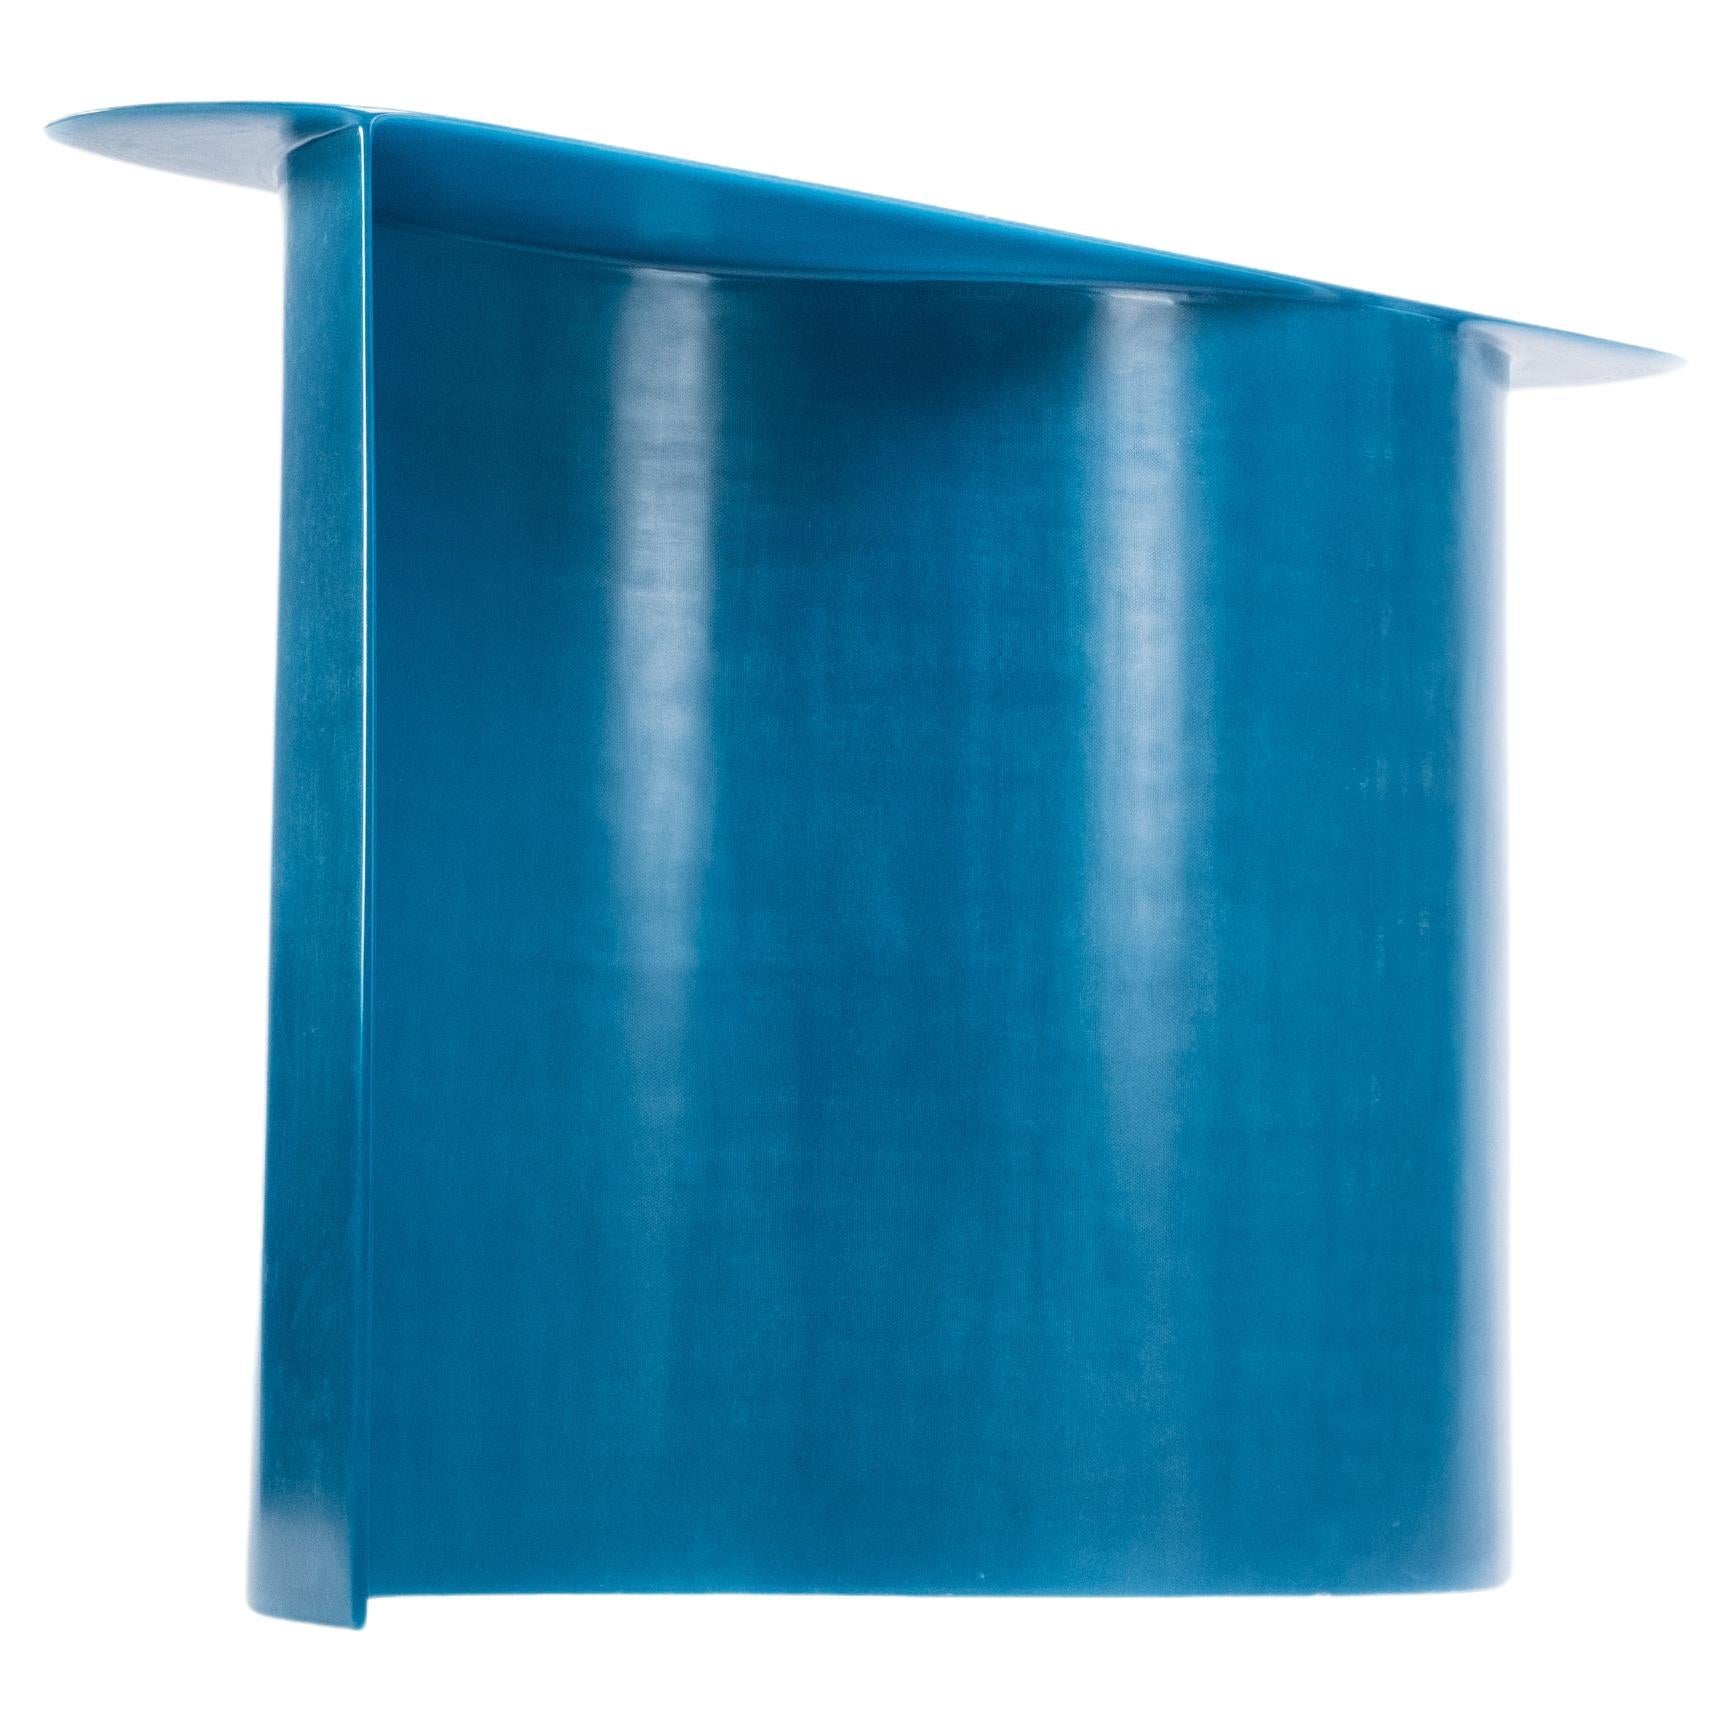 Console contemporaine en fibre de verre bleue, Nouvelle vague, de Lukas Cober